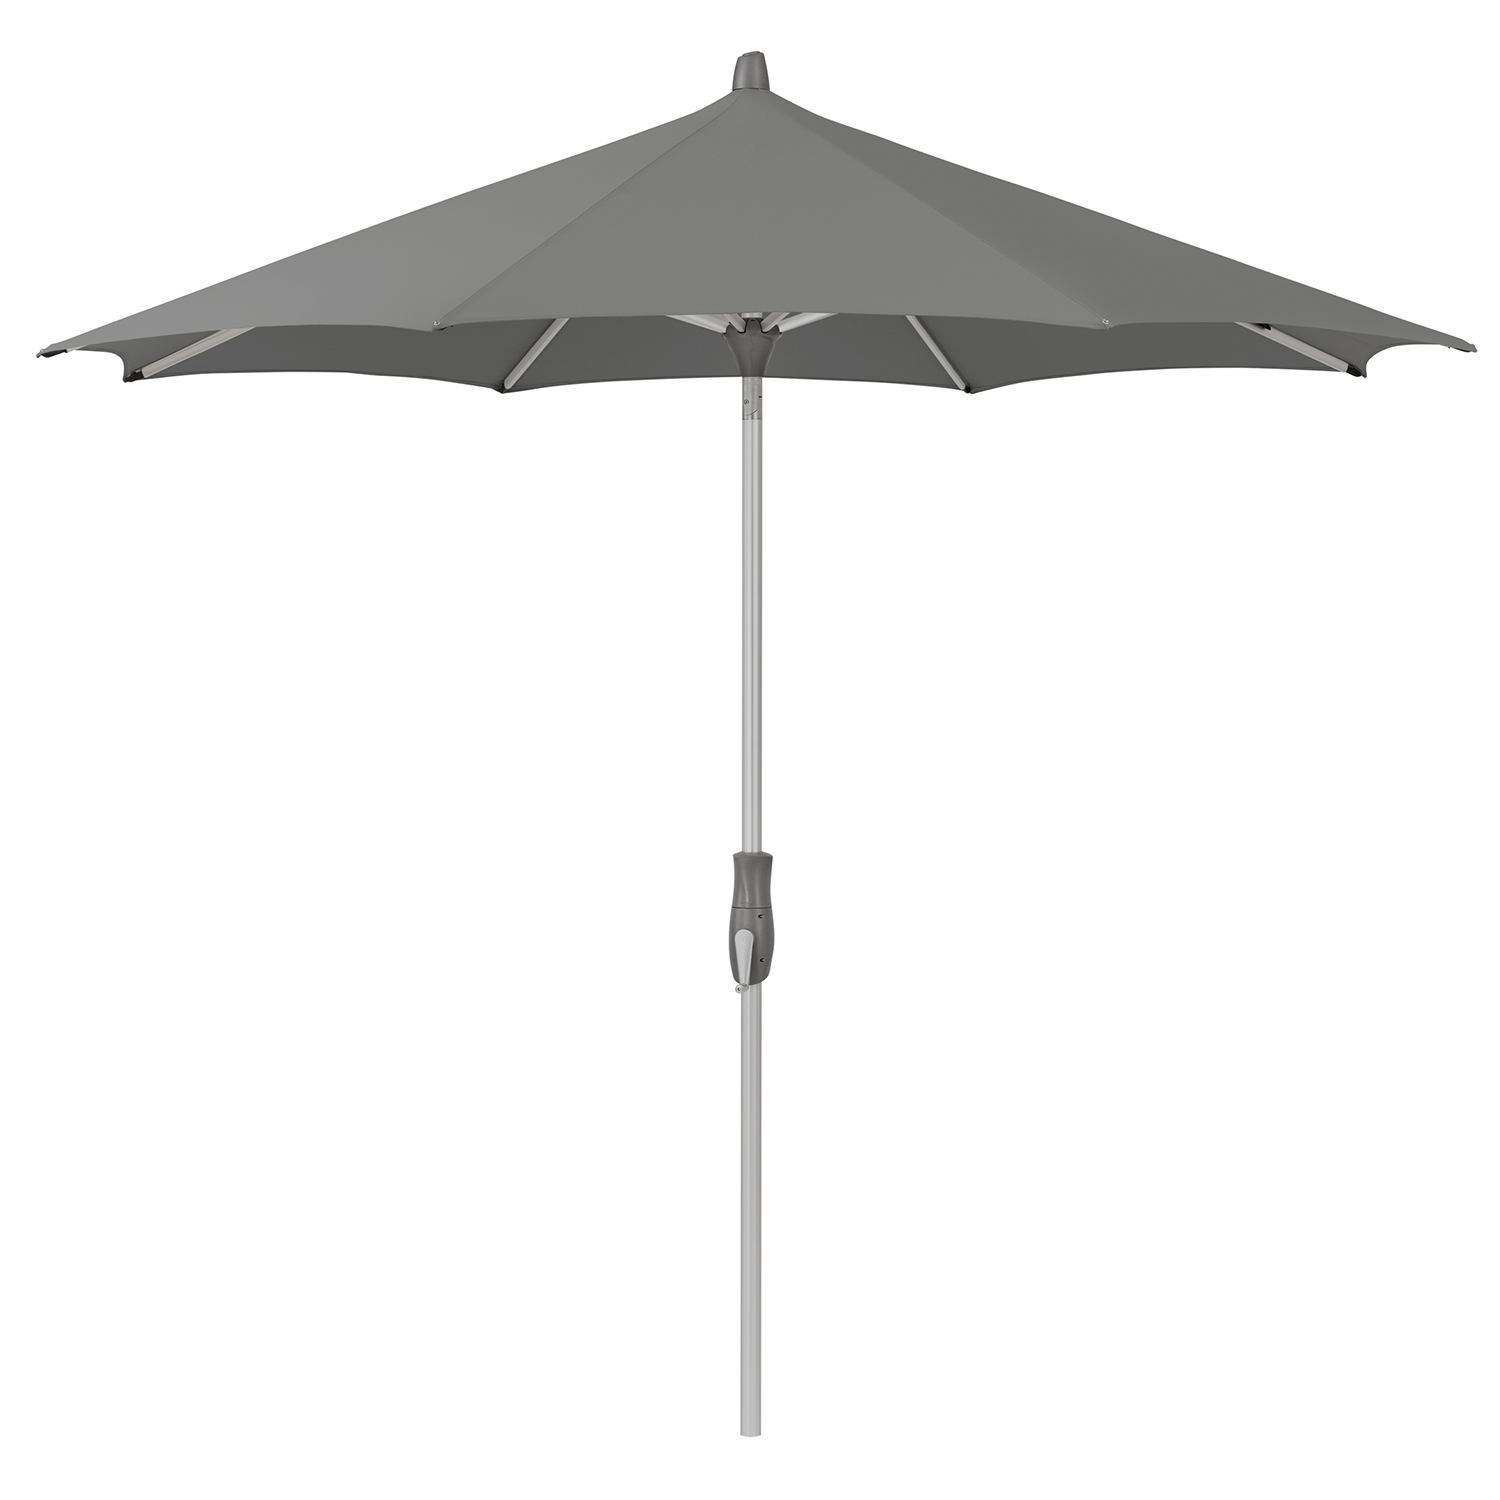 Parasol Alu-Twist 330cm (stone grey)